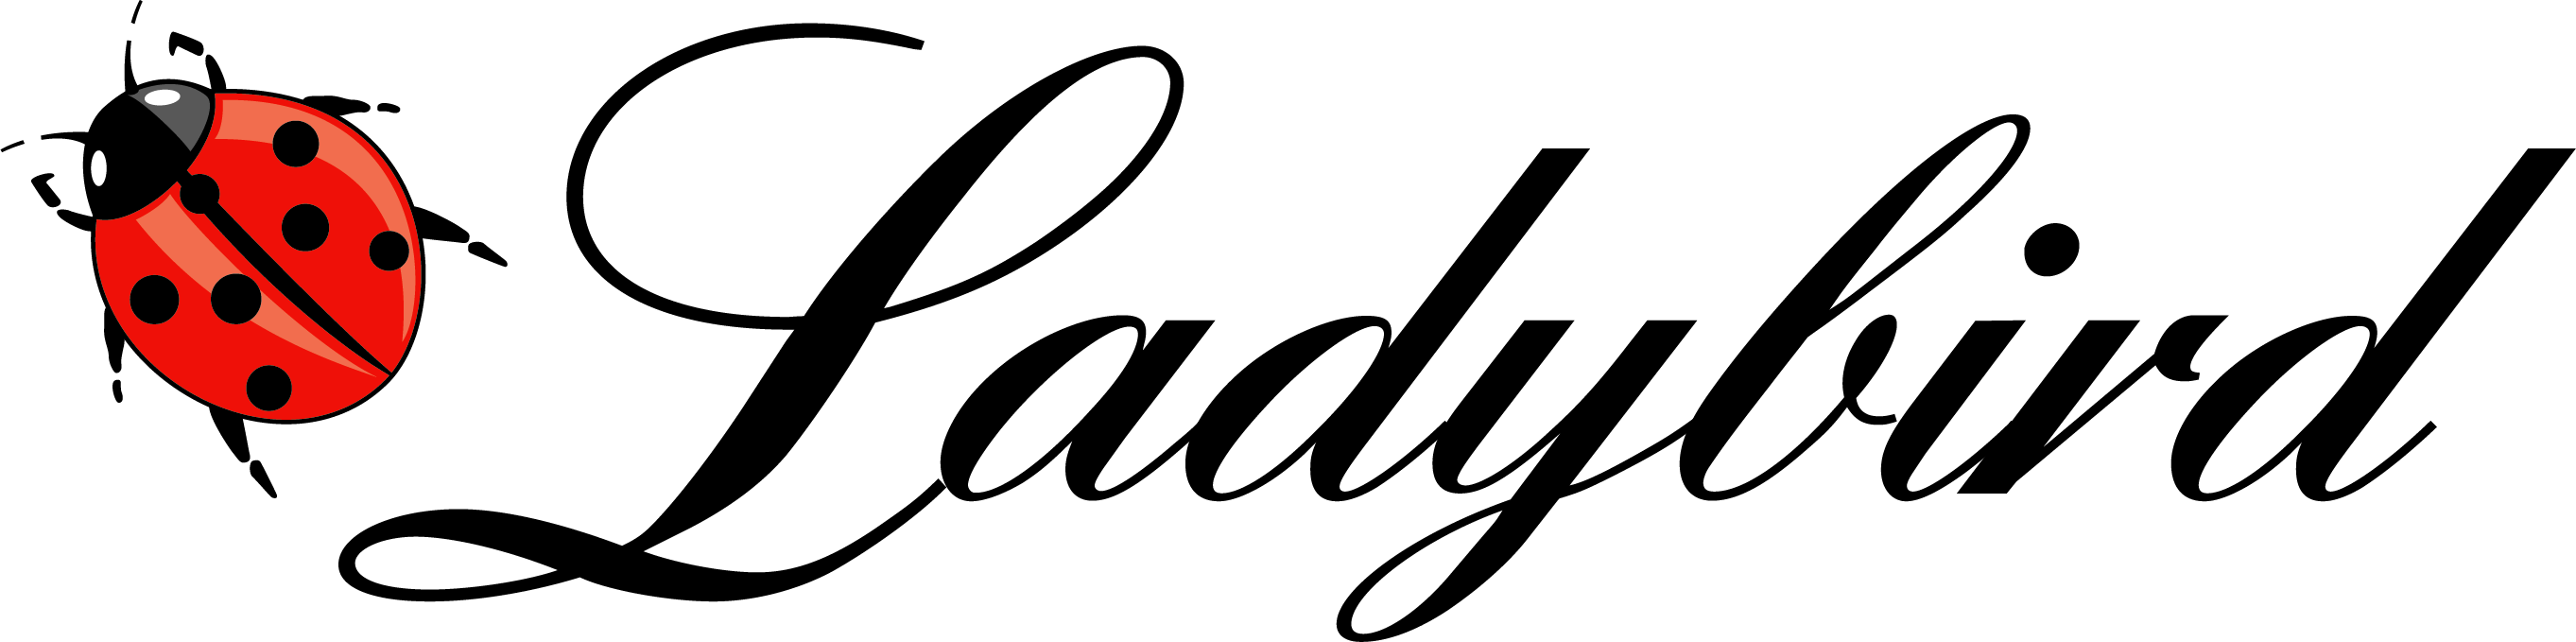 Damen   LADYBIRD logo